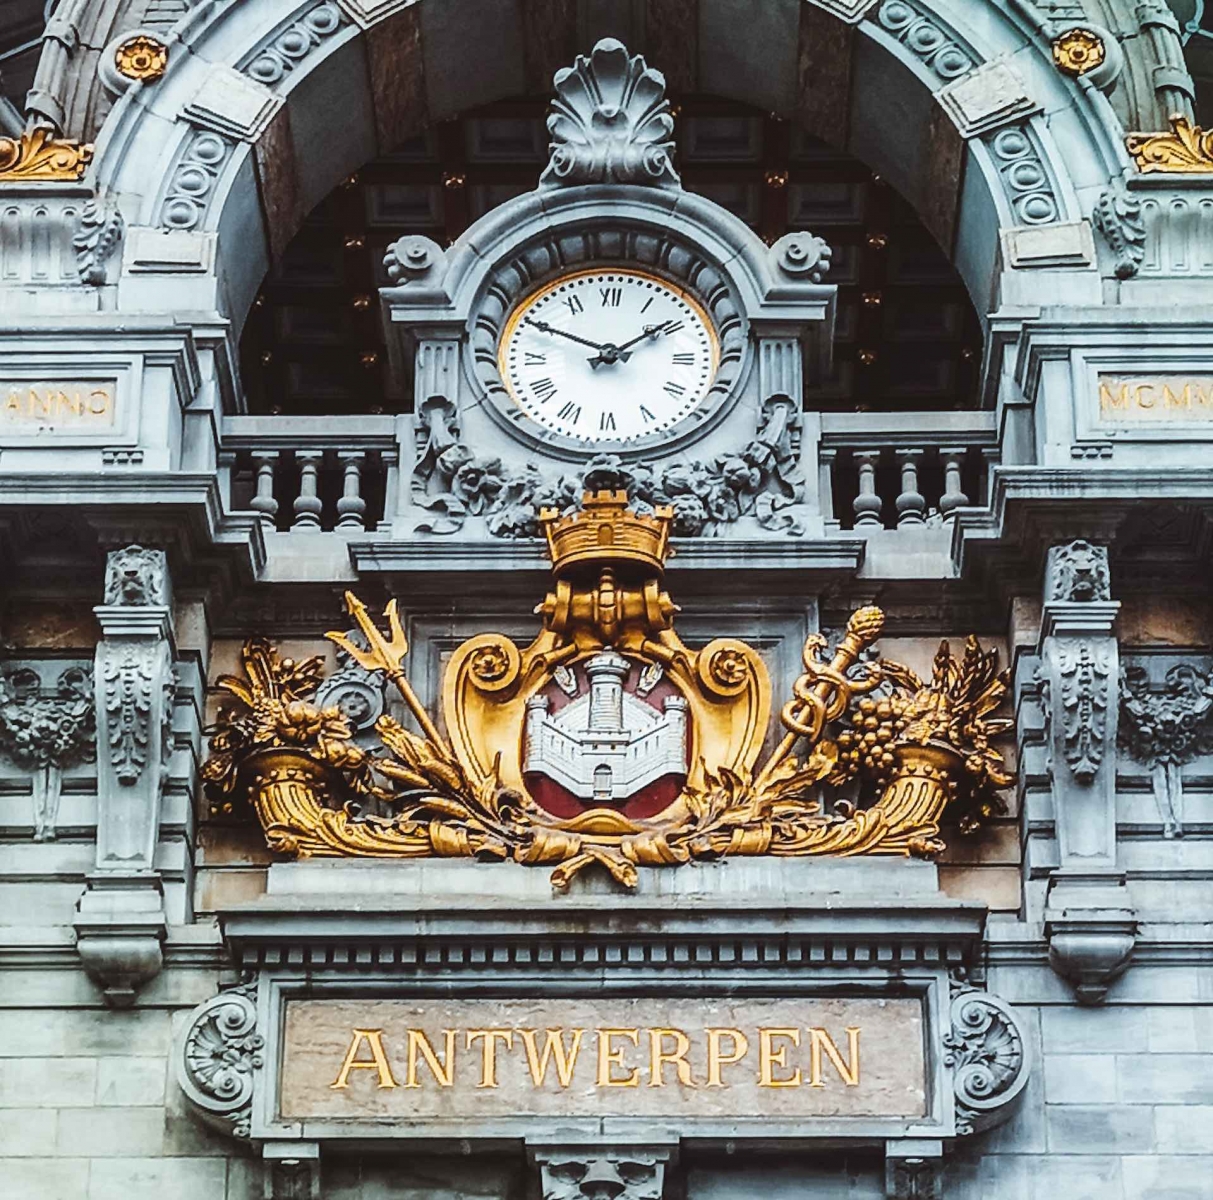 Центральный вокзал Антверпена, Koningin Astridplein, Антверпен, Бельгия